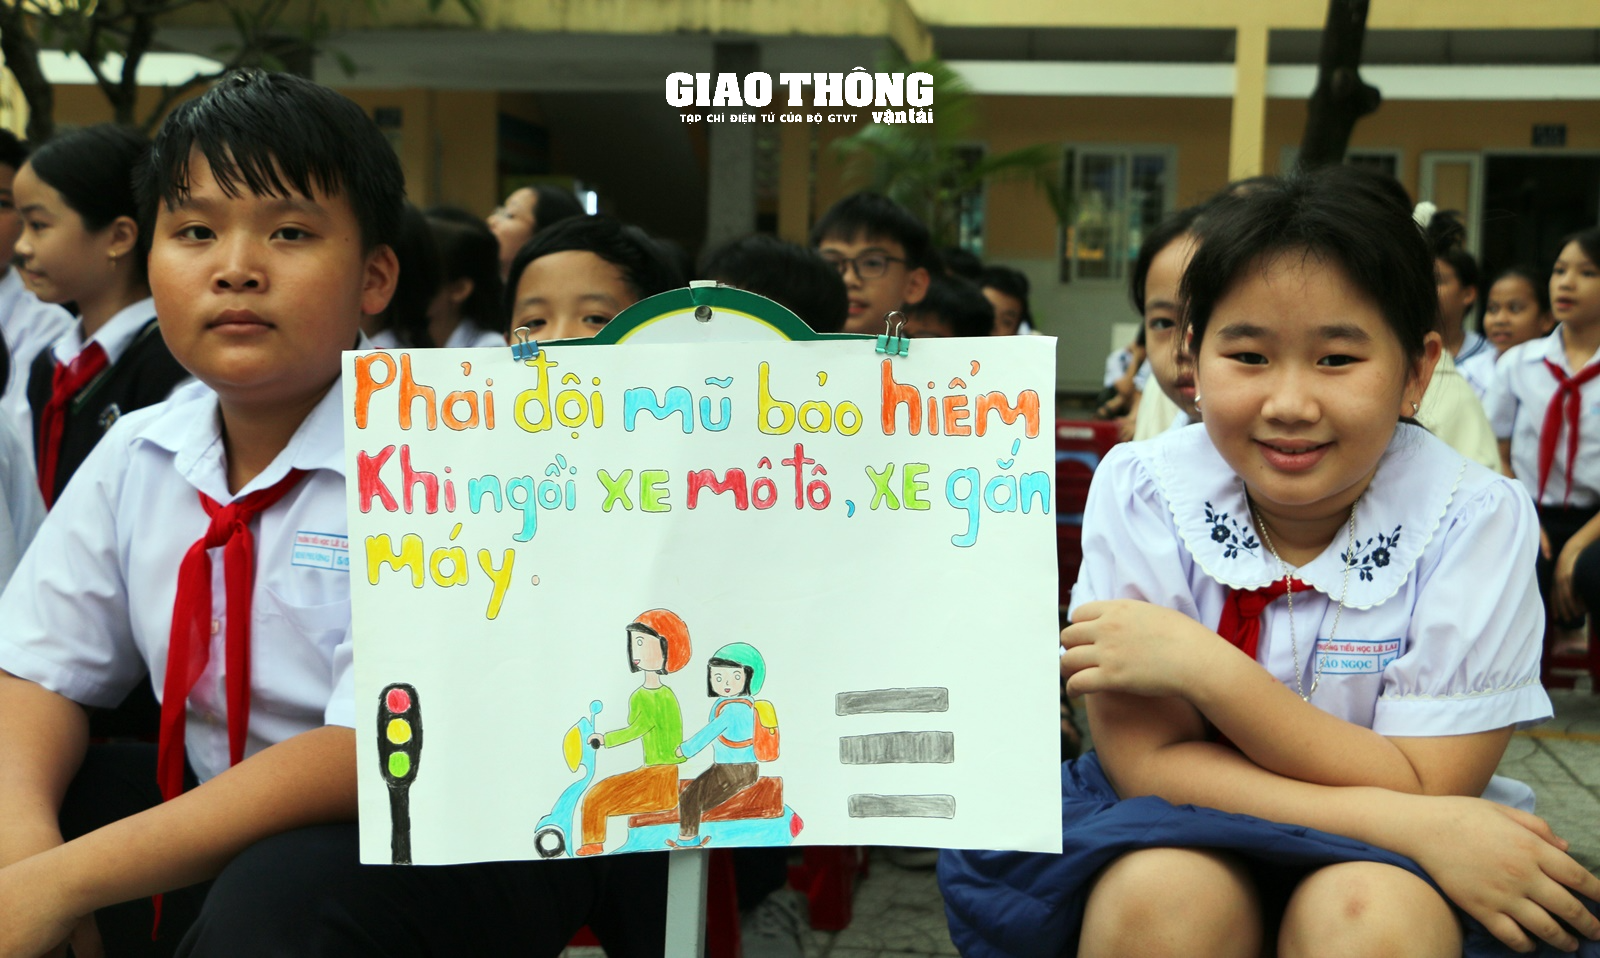 Học sinh Đà Nẵng hào hứng vẽ tranh cổ động "Hãy đội mũ bảo hiểm"- Ảnh 2.